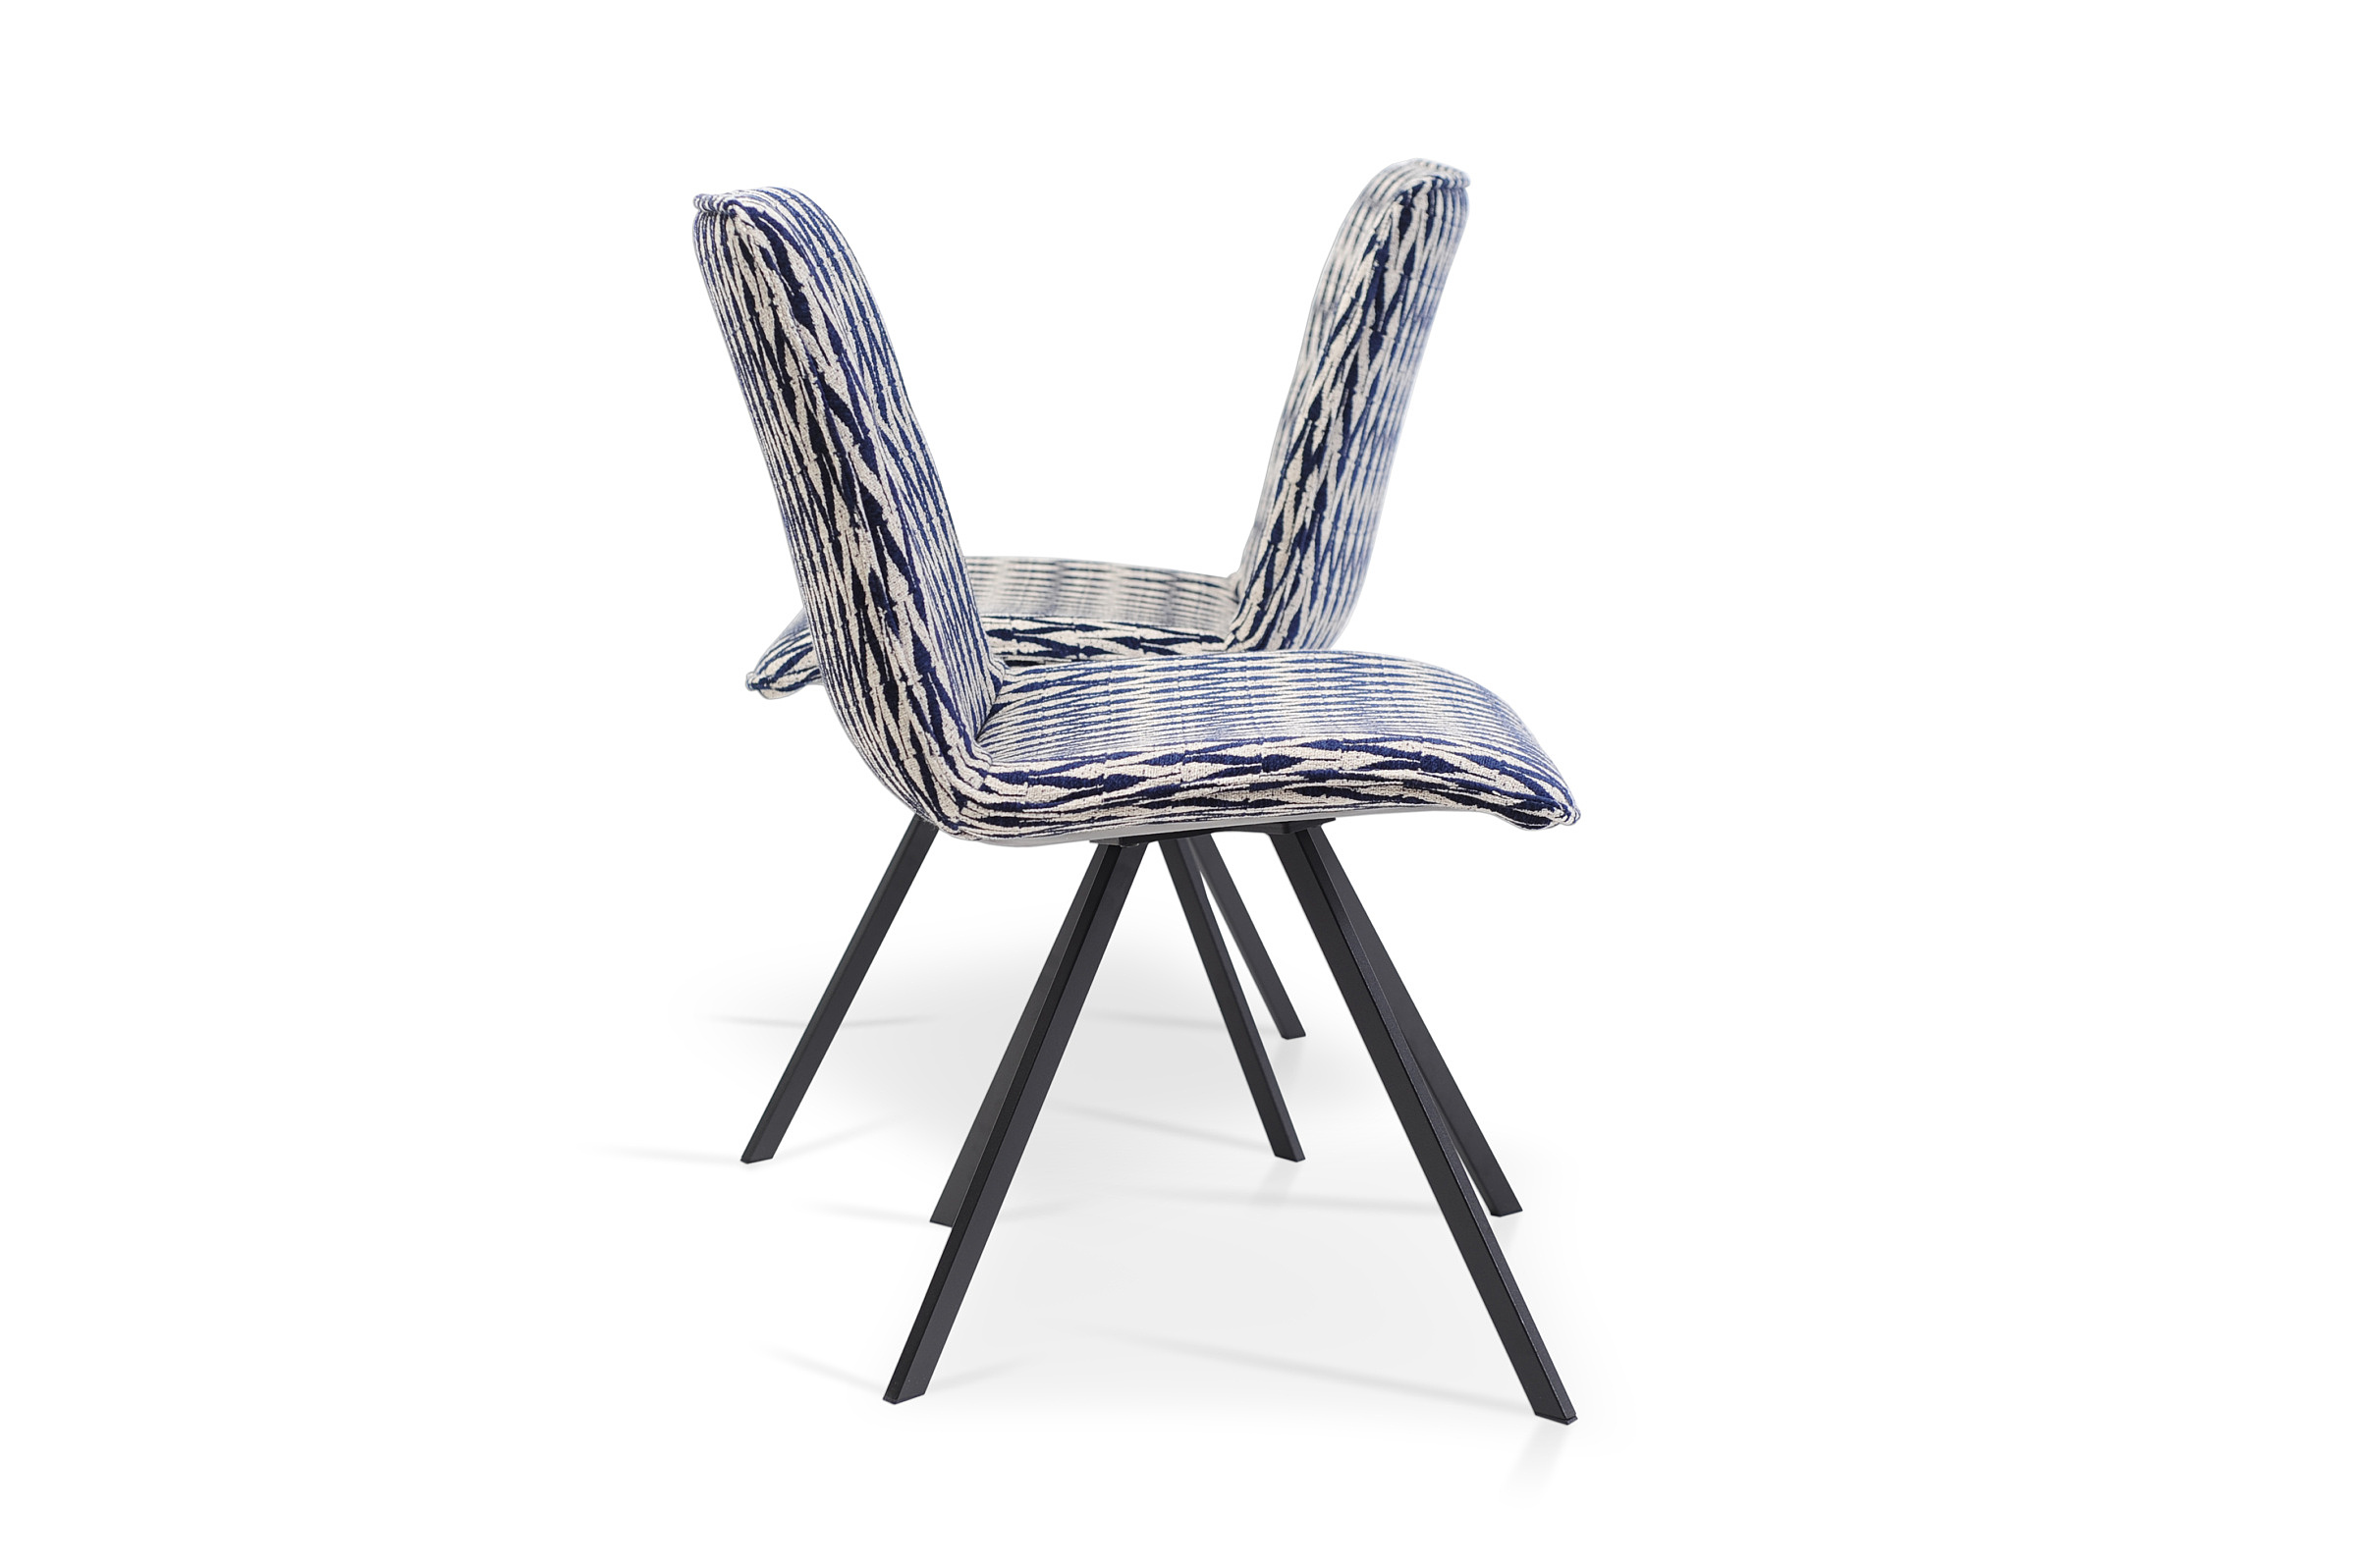 Krzesło K09 na metalowych nogach - wygodne siedziska i kubełkowy kształt